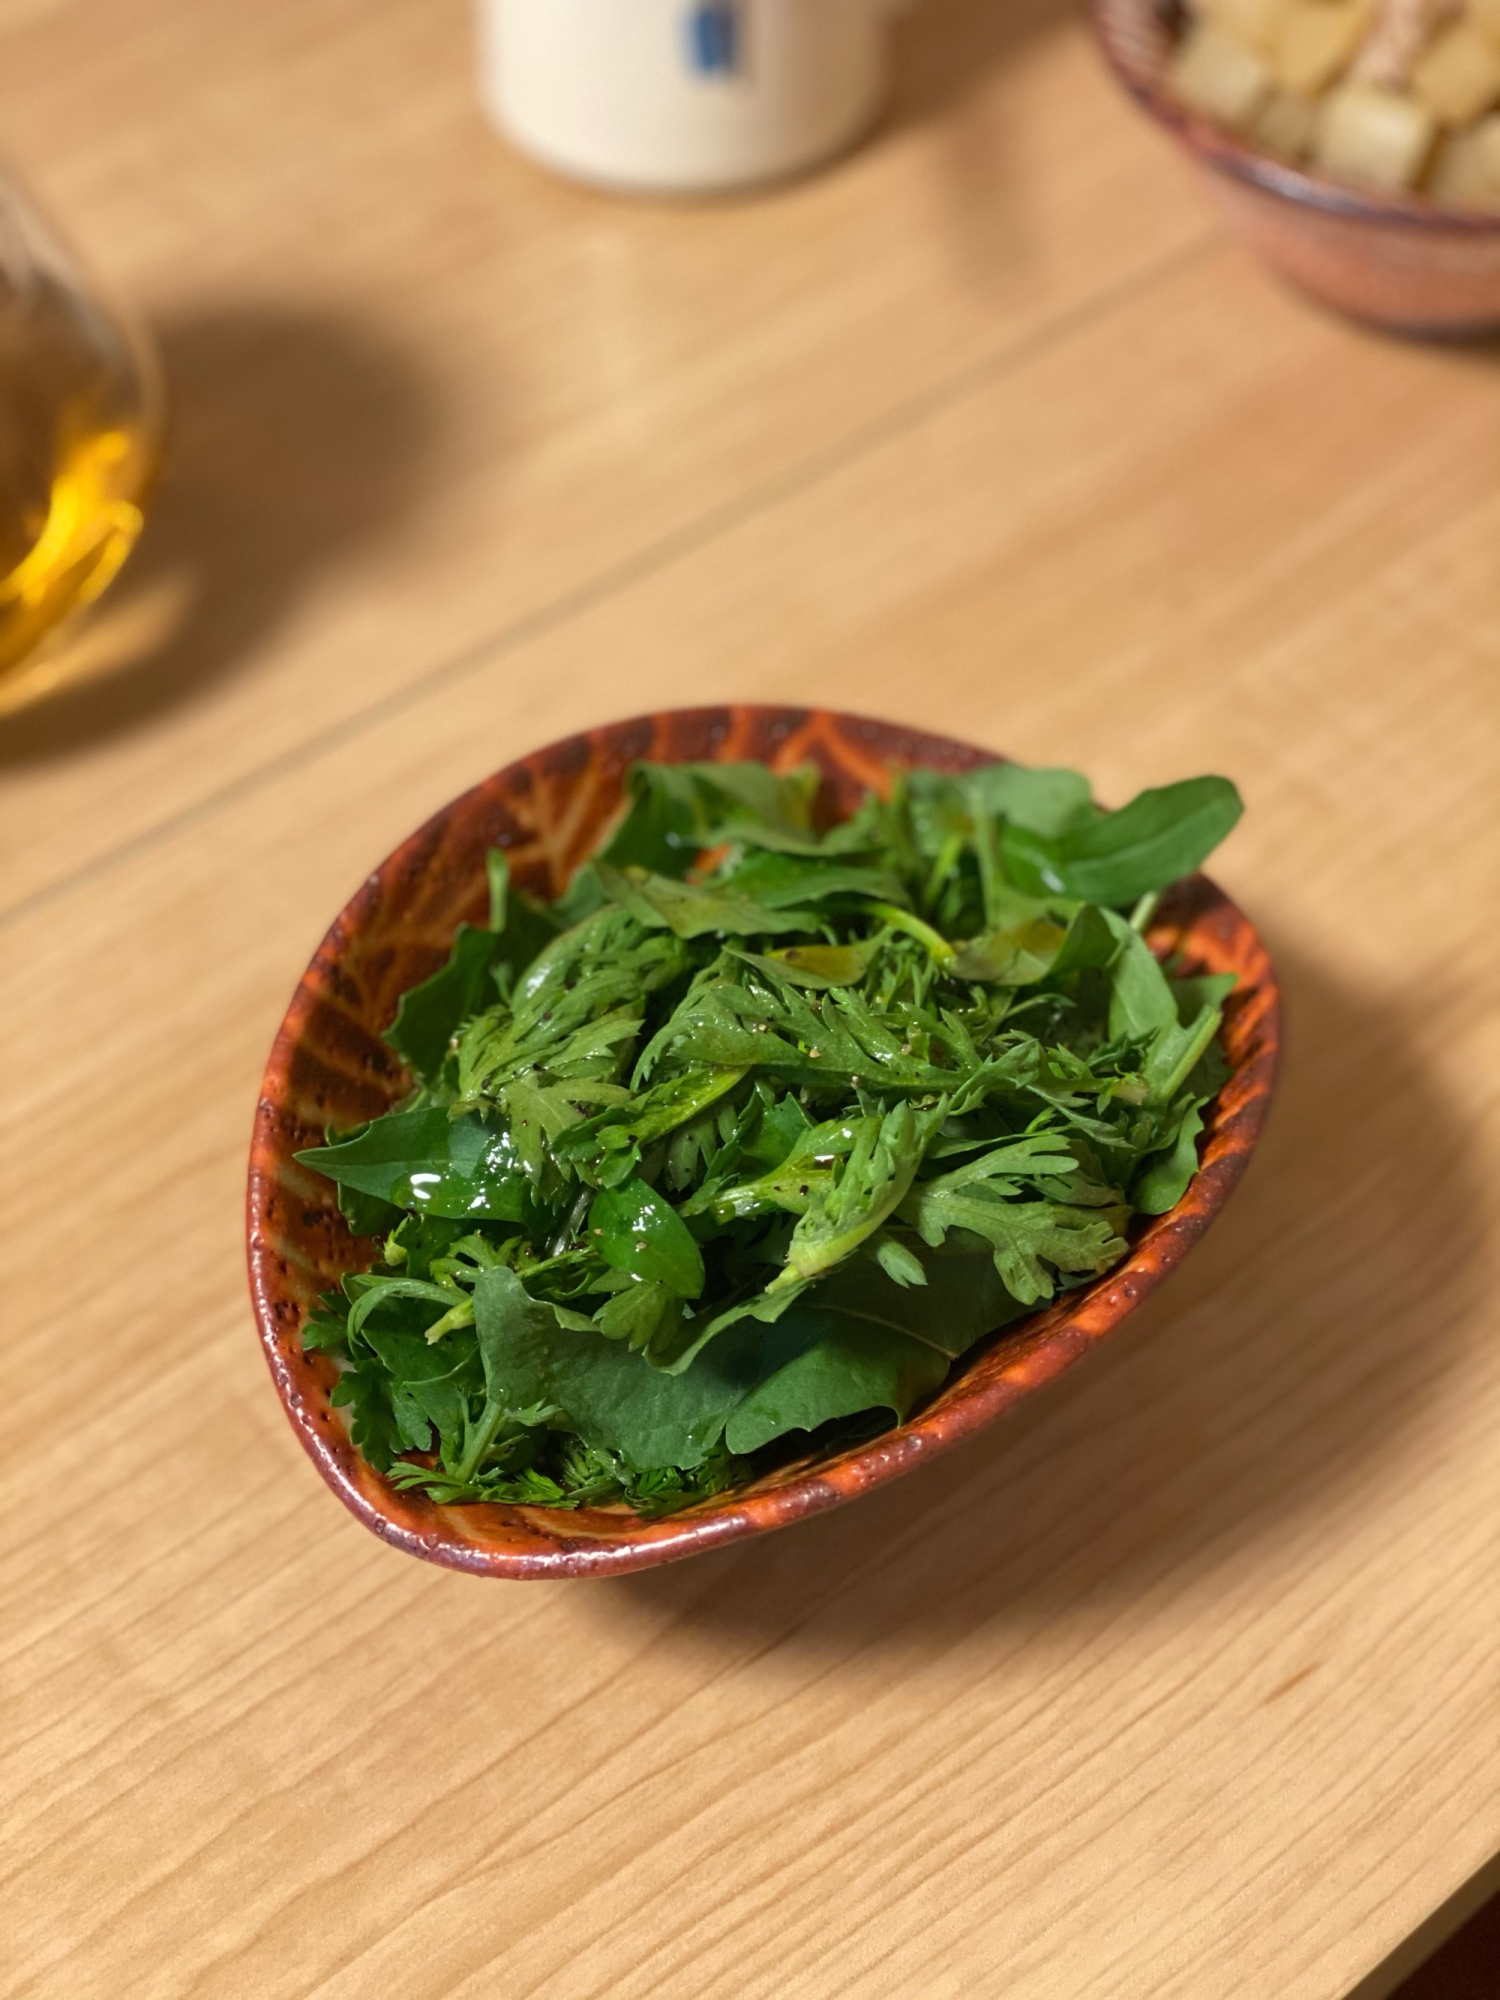 香草野菜のグリーンサラダ